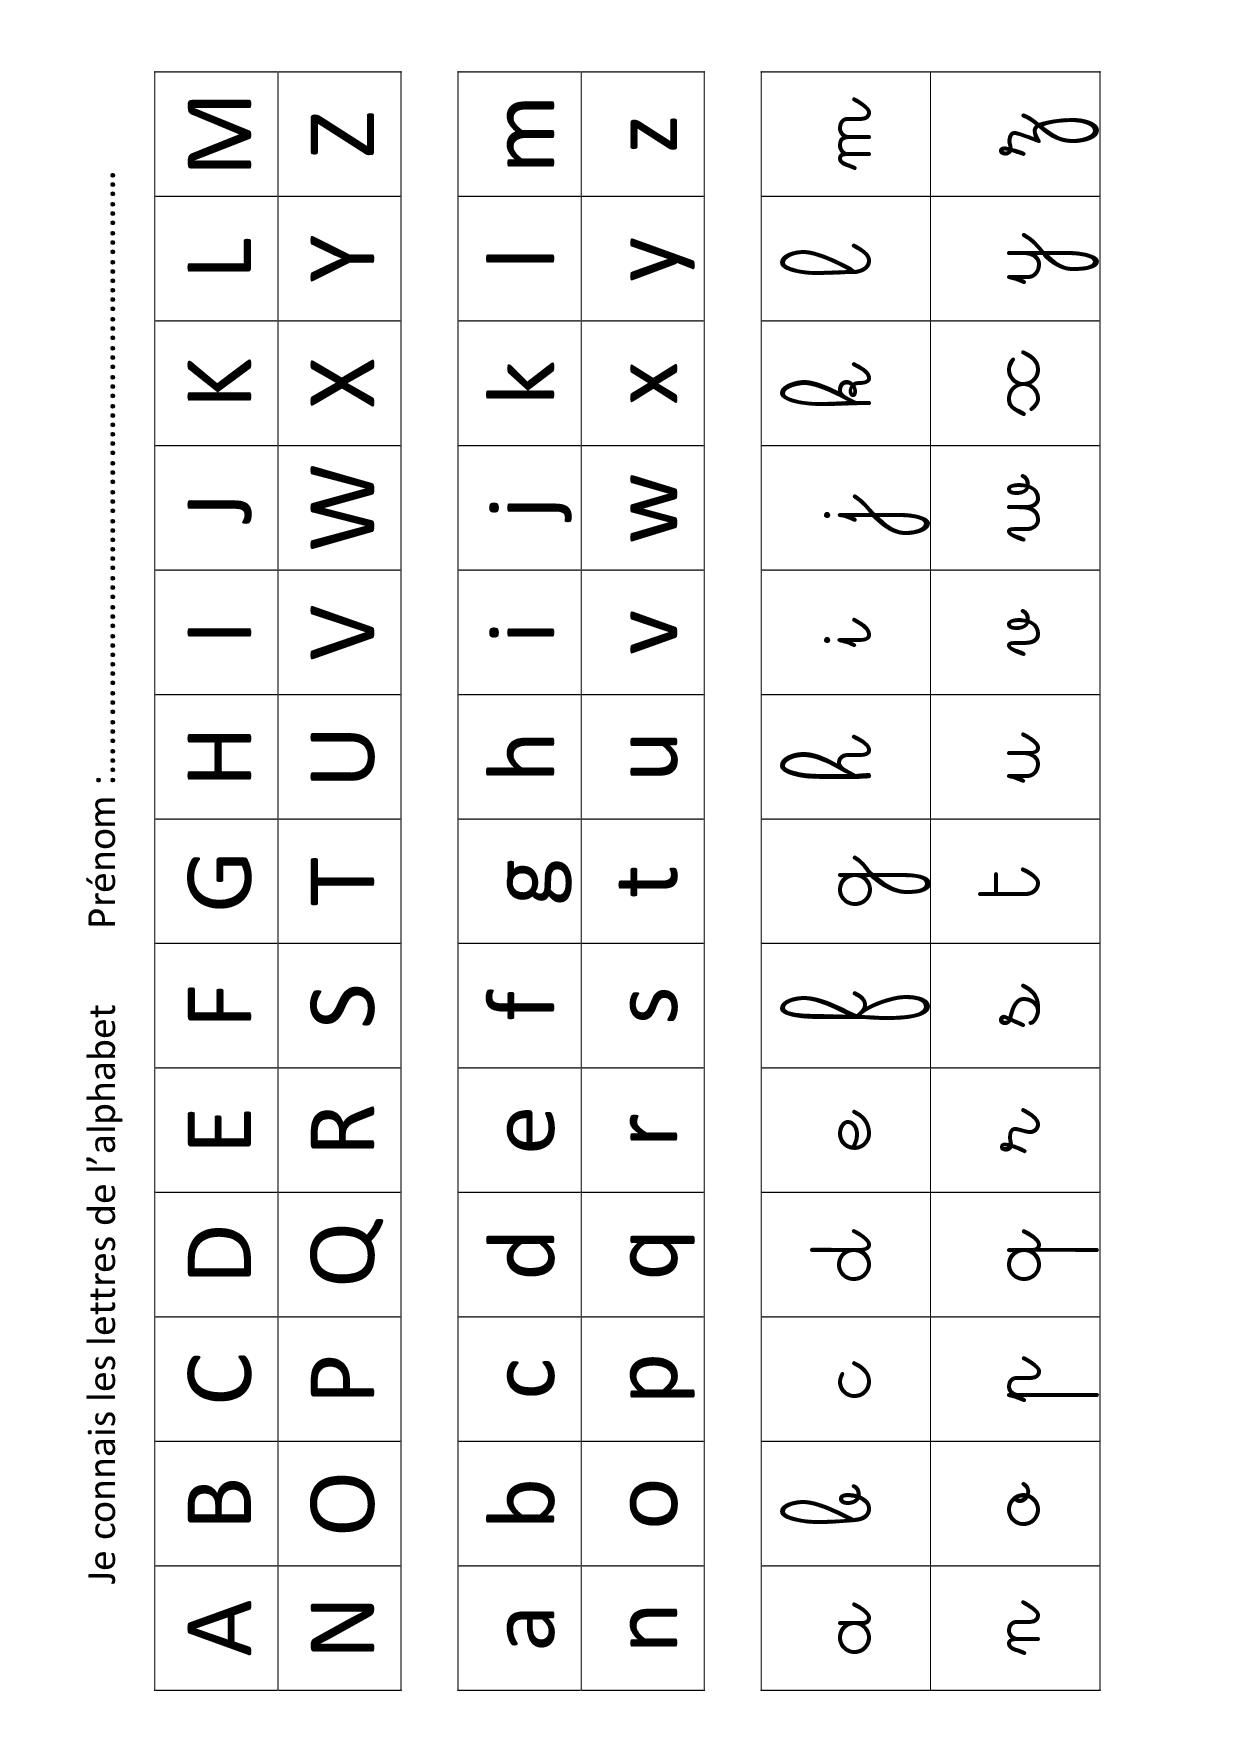 Apprendre Les Lettres De L'alphabet Avec Leap Frog intérieur Apprendre À Écrire L Alphabet En Maternelle